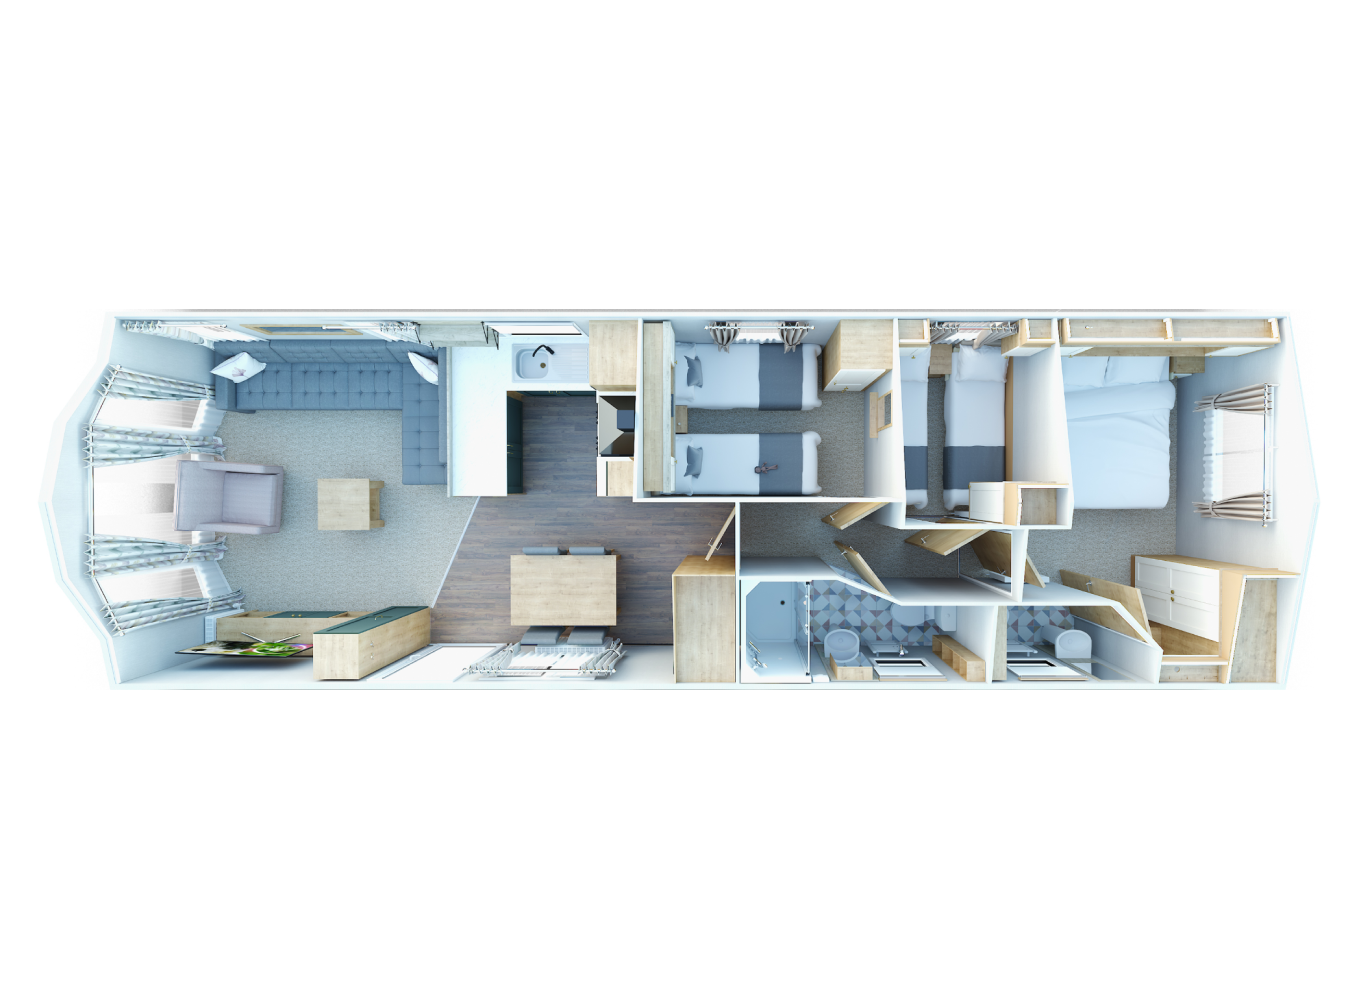 New Willerby Sierra floorplan layout static caravan mobile home 38 x 12 3 bedroom